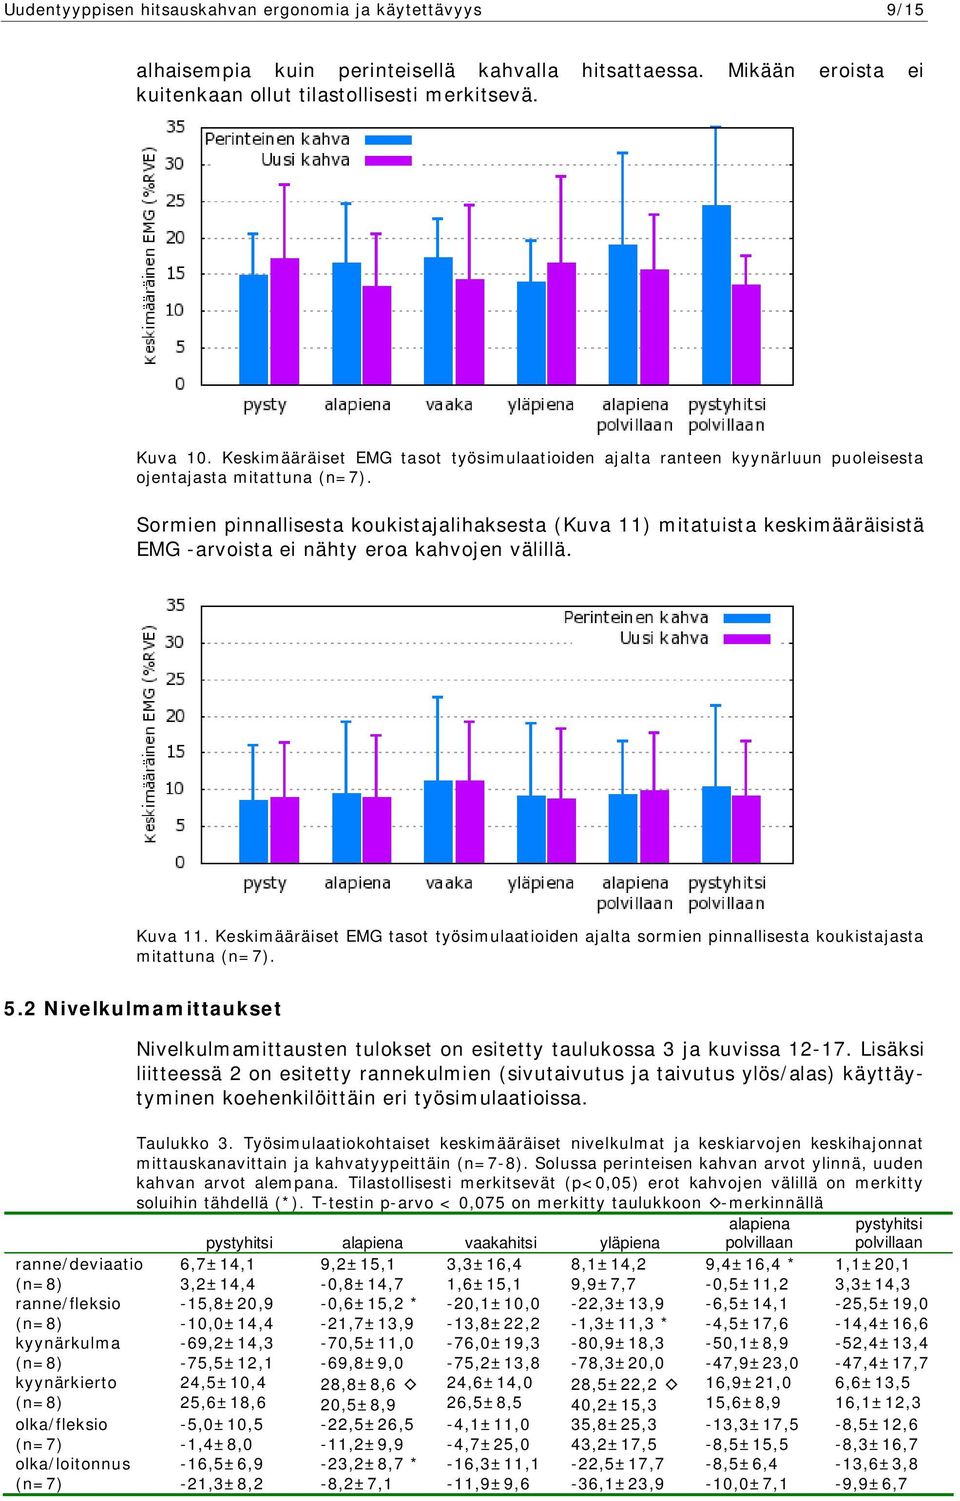 Sormien pinnallisesta koukistajalihaksesta (Kuva 11) mitatuista keskimääräisistä EMG -arvoista ei nähty eroa kahvojen välillä. Kuva 11.